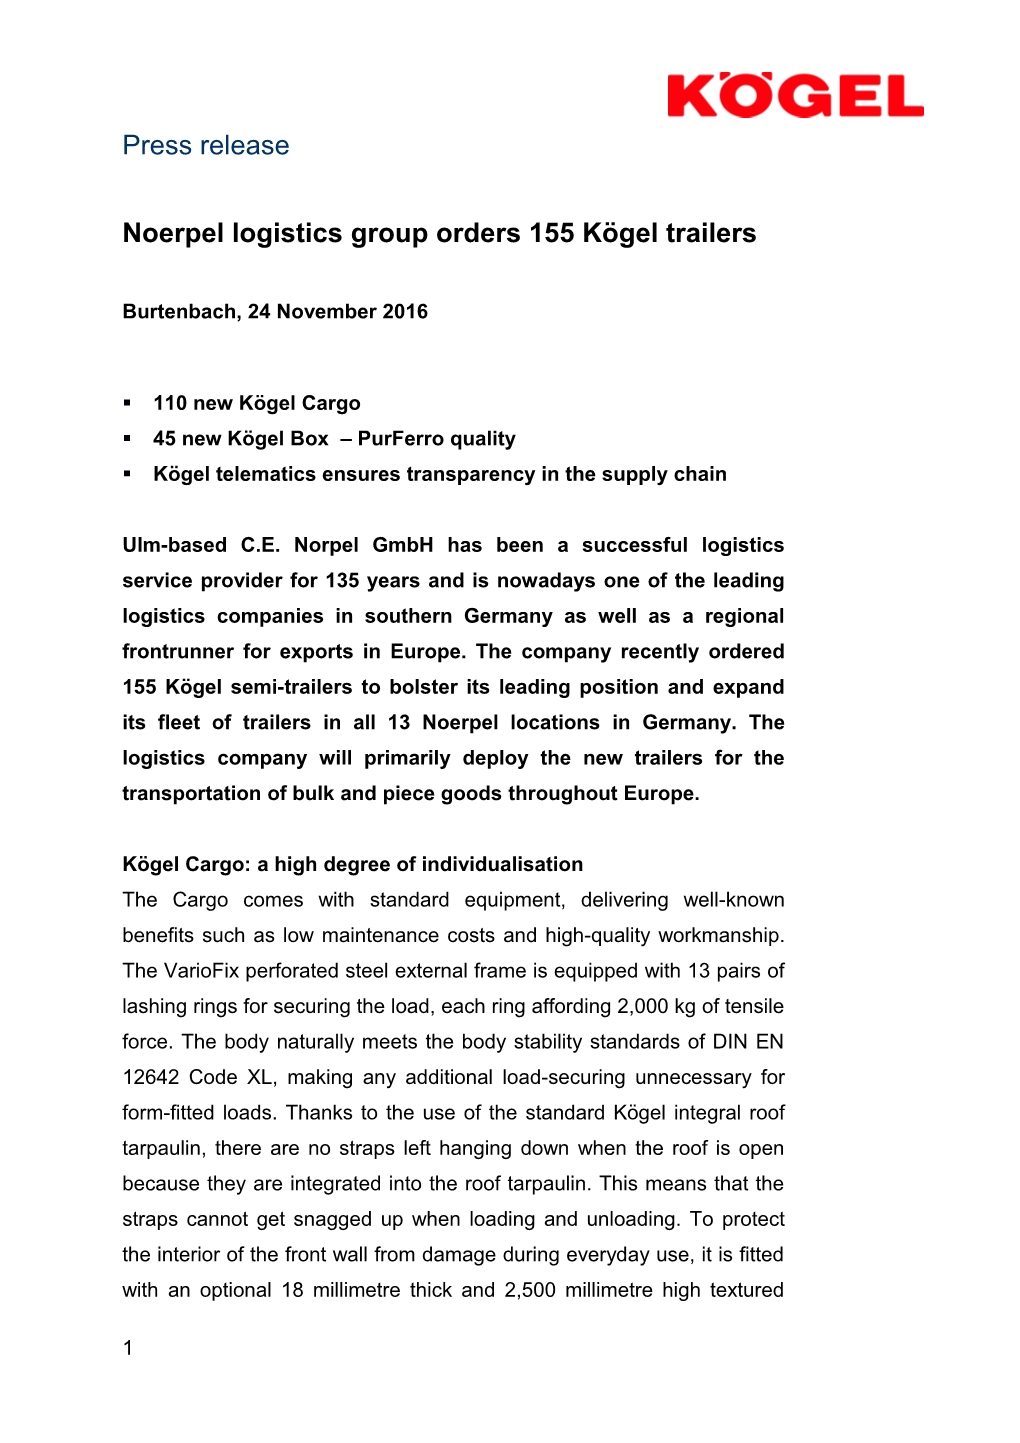 Noerpel Logistics Group Orders 155 Kögel Trailers